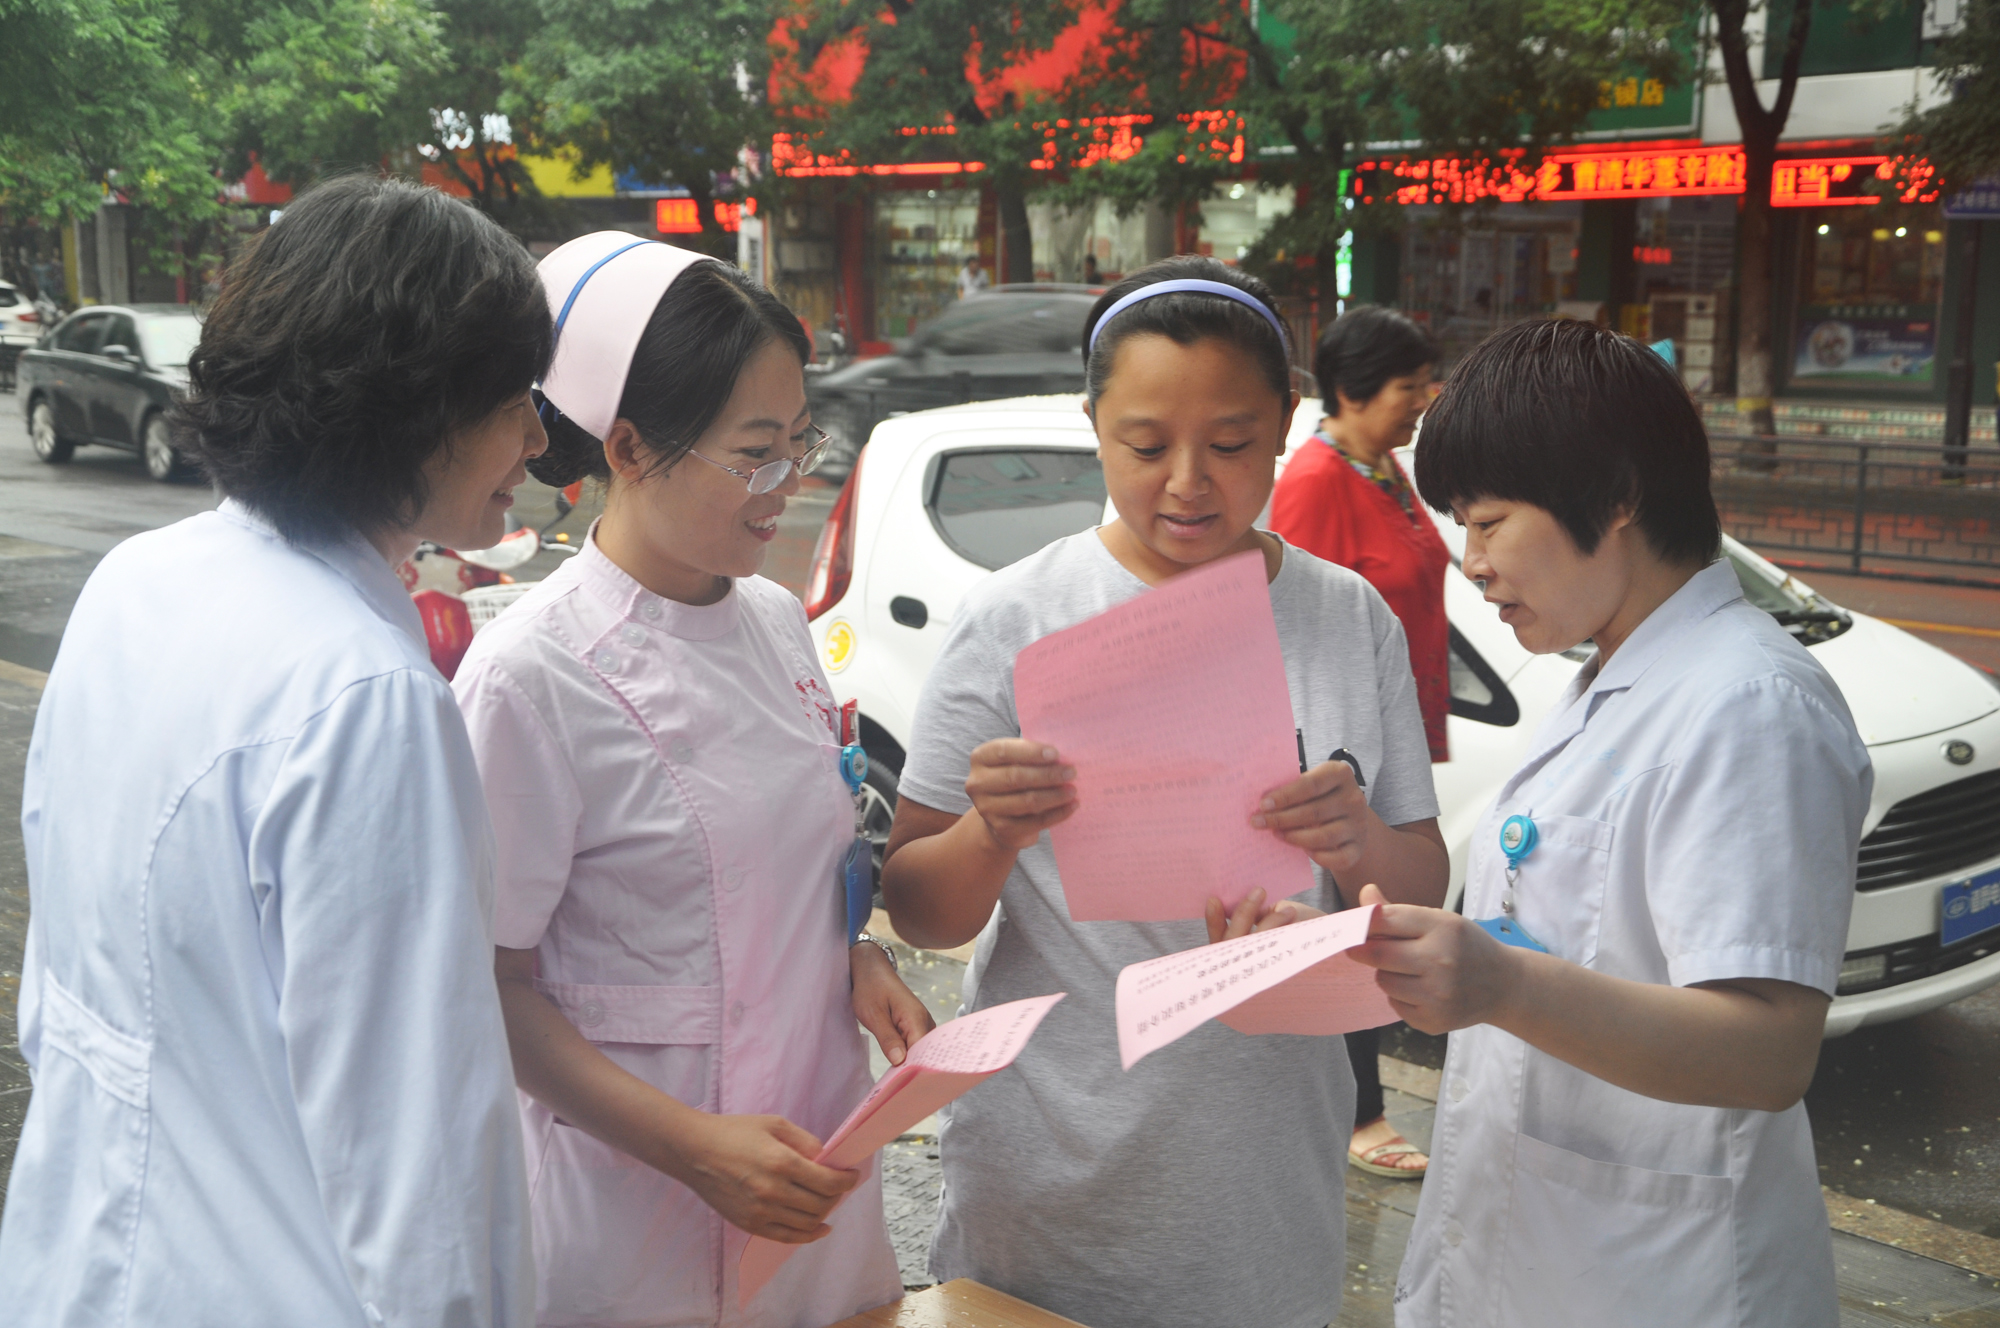 青州市人民医院医务人员走上街头宣传母乳喂养